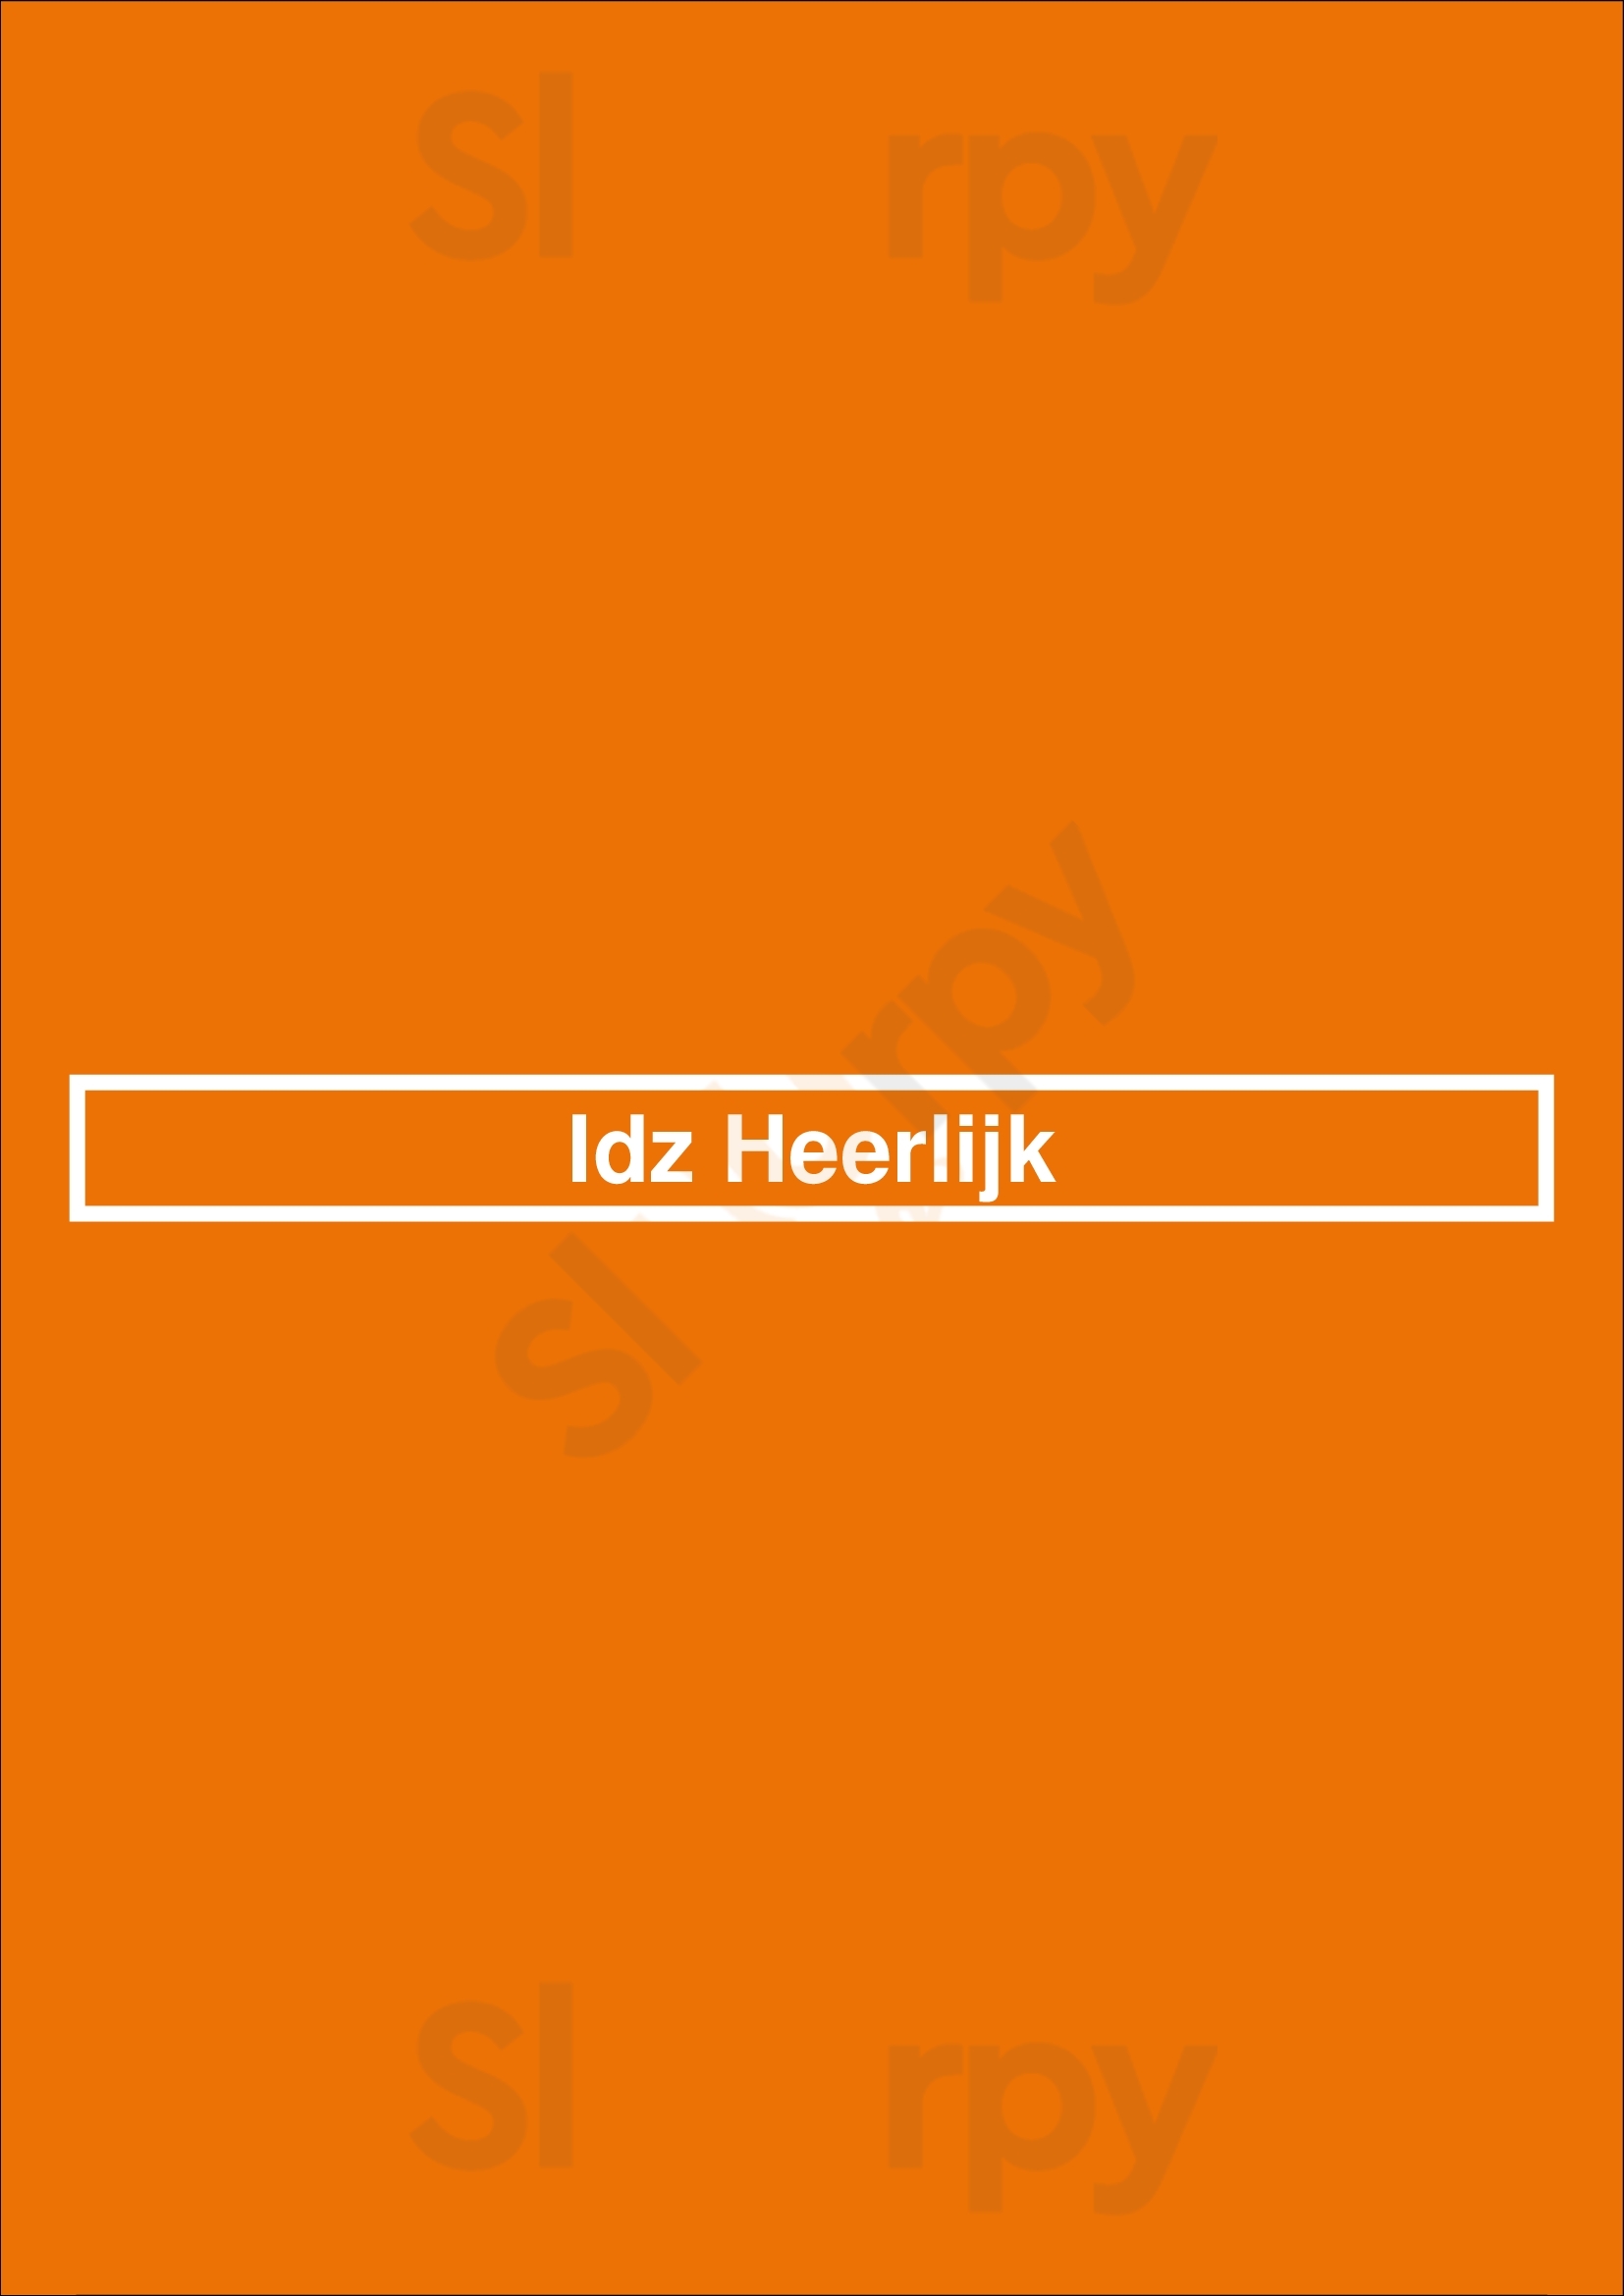 Idz Heerlijk Rijswijk Menu - 1